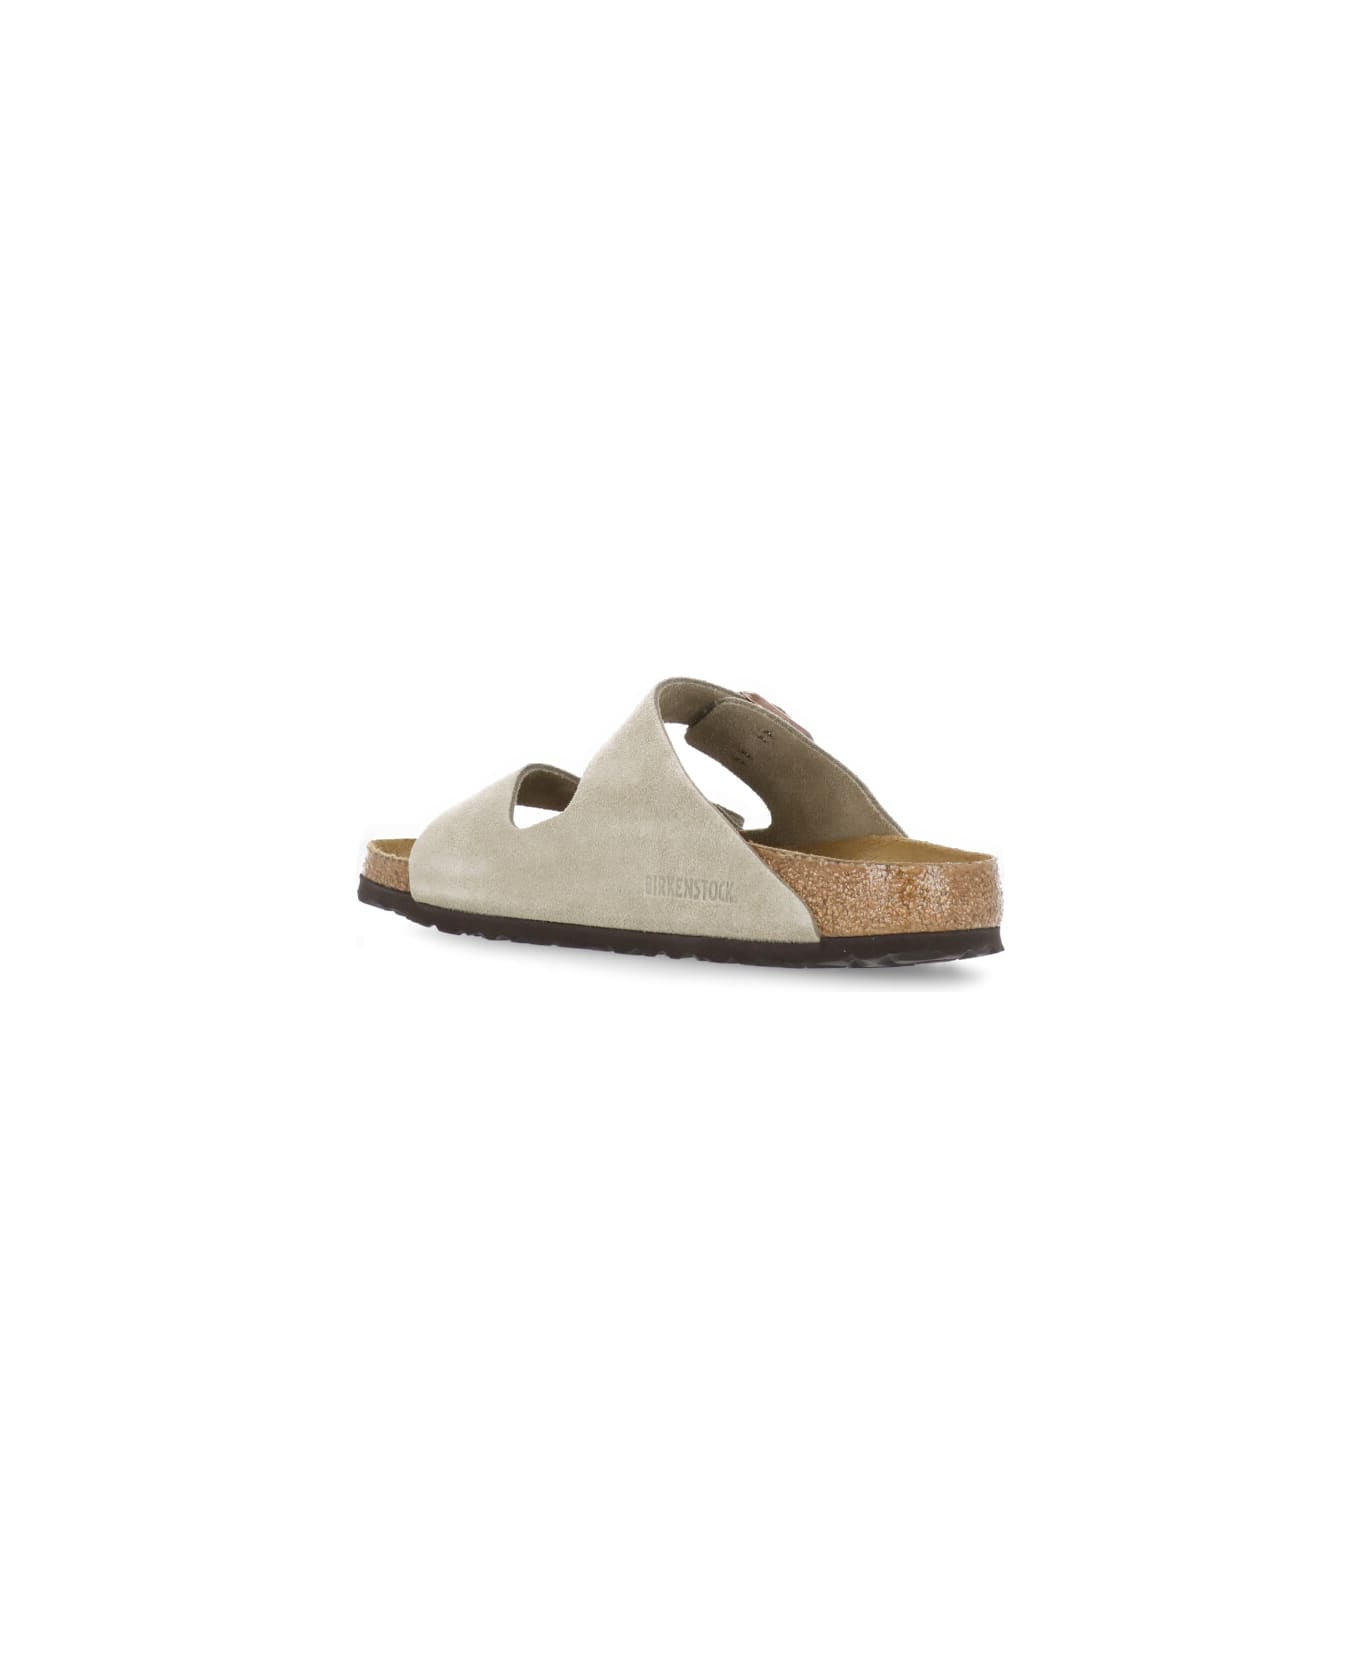 Birkenstock Arizona Bs Sandals - Beige